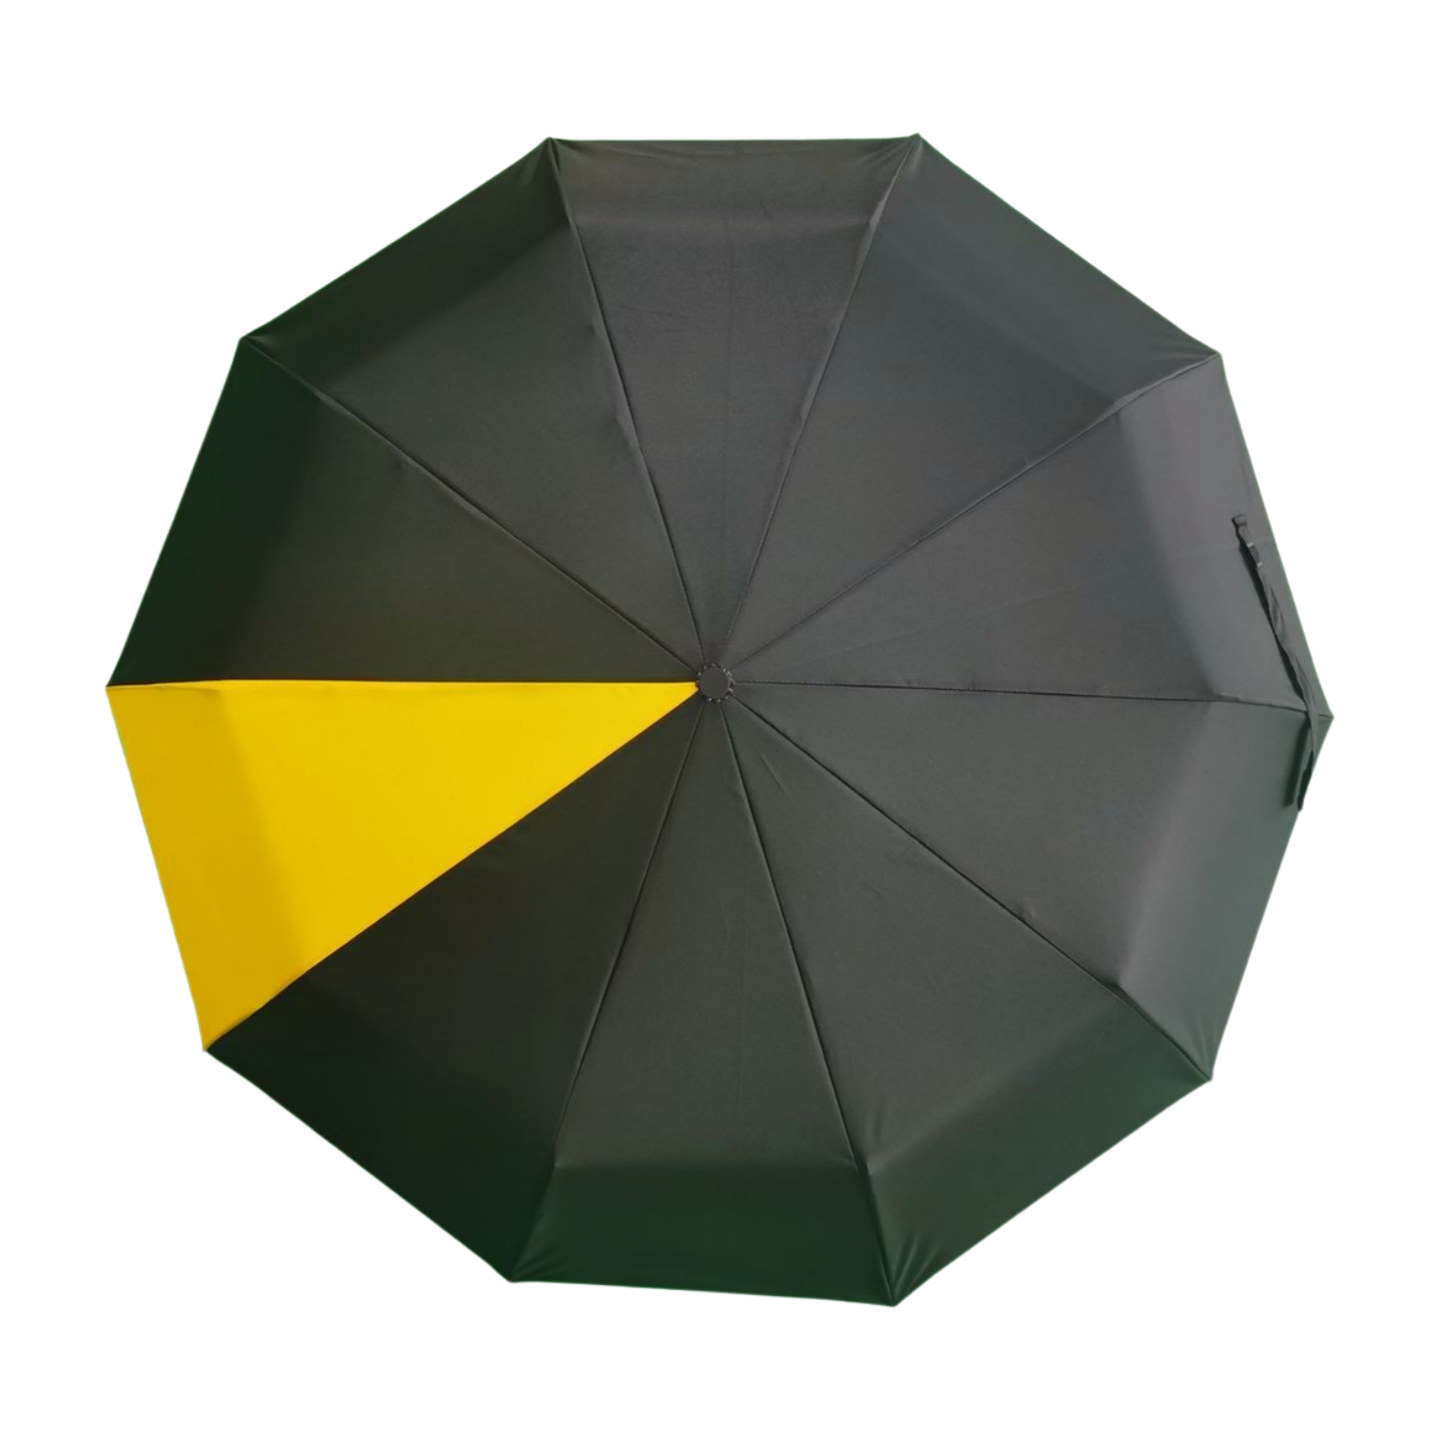 https://www.hodaumbrella.com/upgrade-hook-handle-three-folding-compact-umbrella-product/